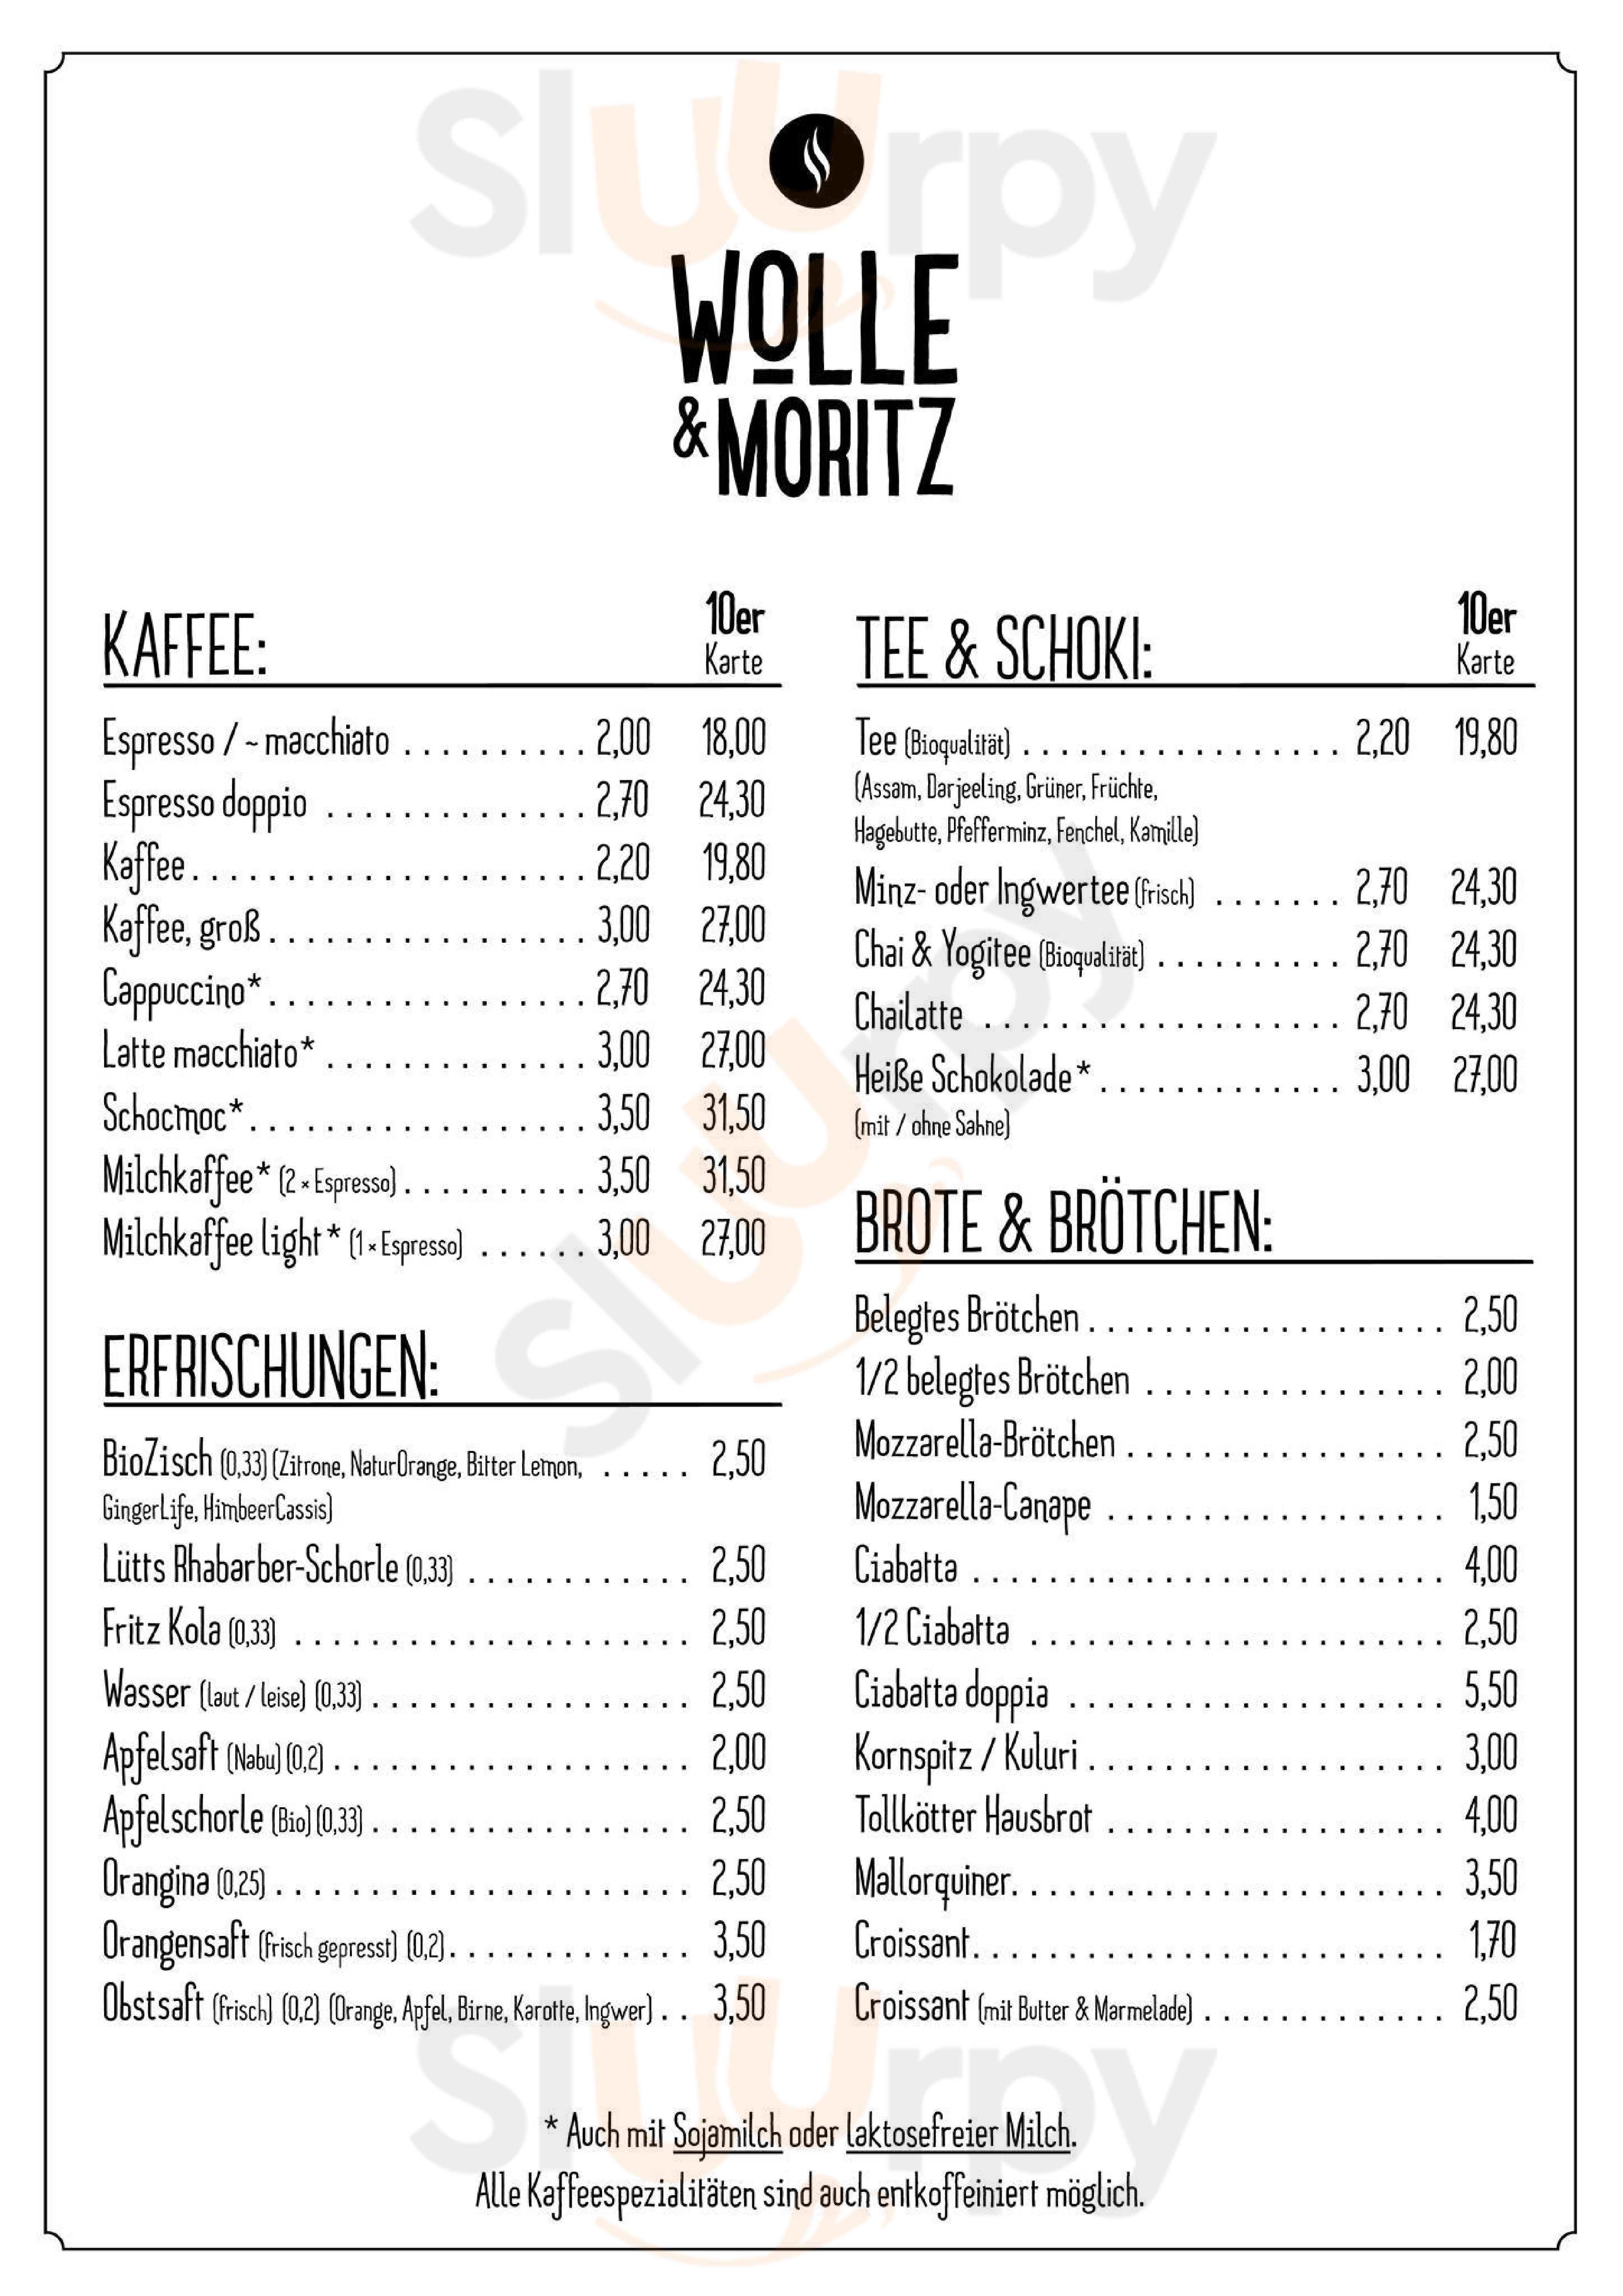 Wolle & Moritz - Kaffe & Feinkost Münster Menu - 1